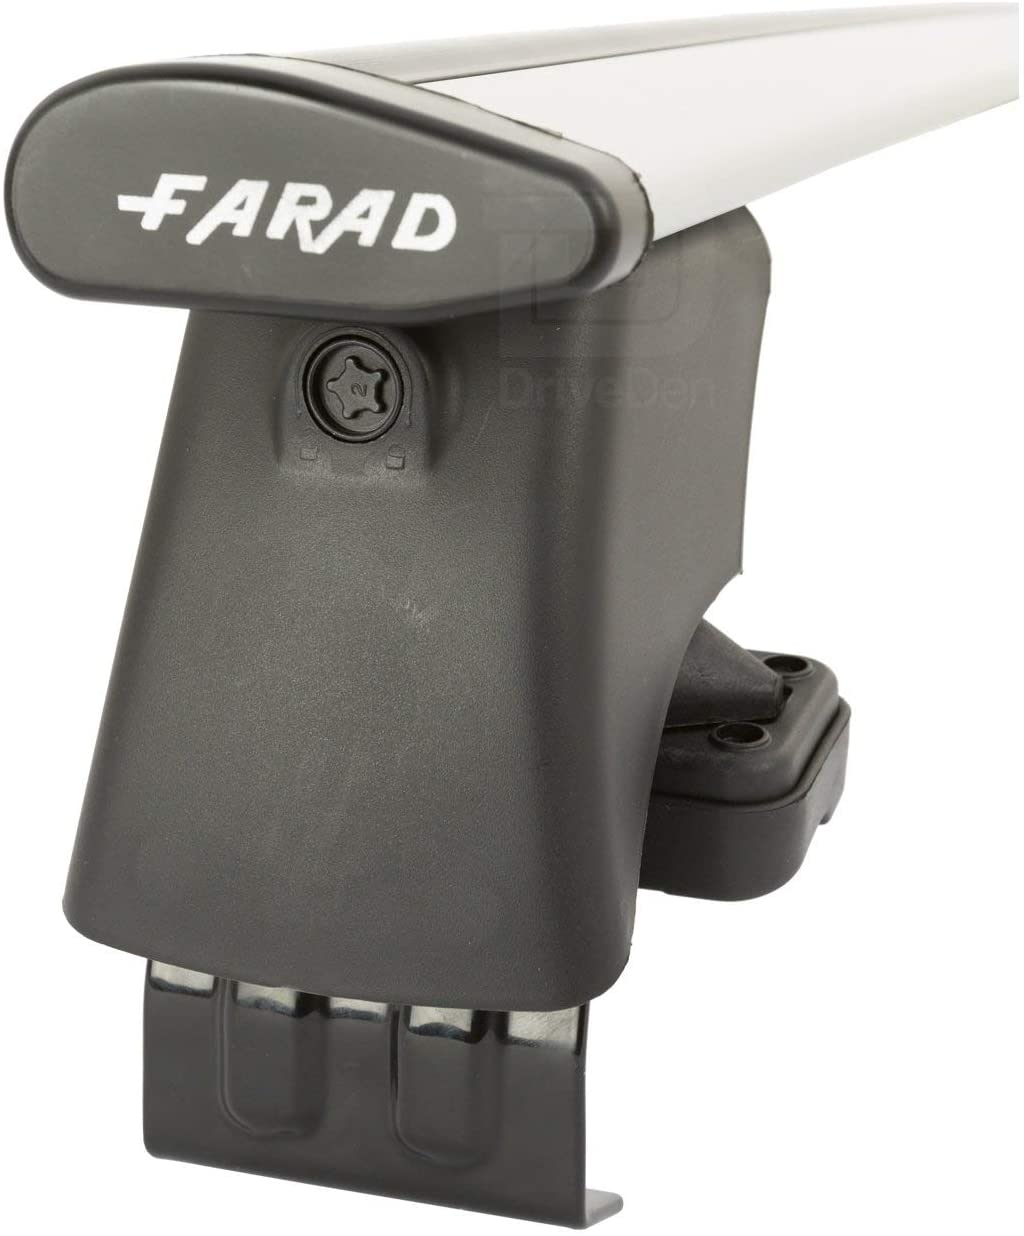 FARAD-Kit H2 per barre portatutto - Audi A6 1997-2003 (senza corrimano)